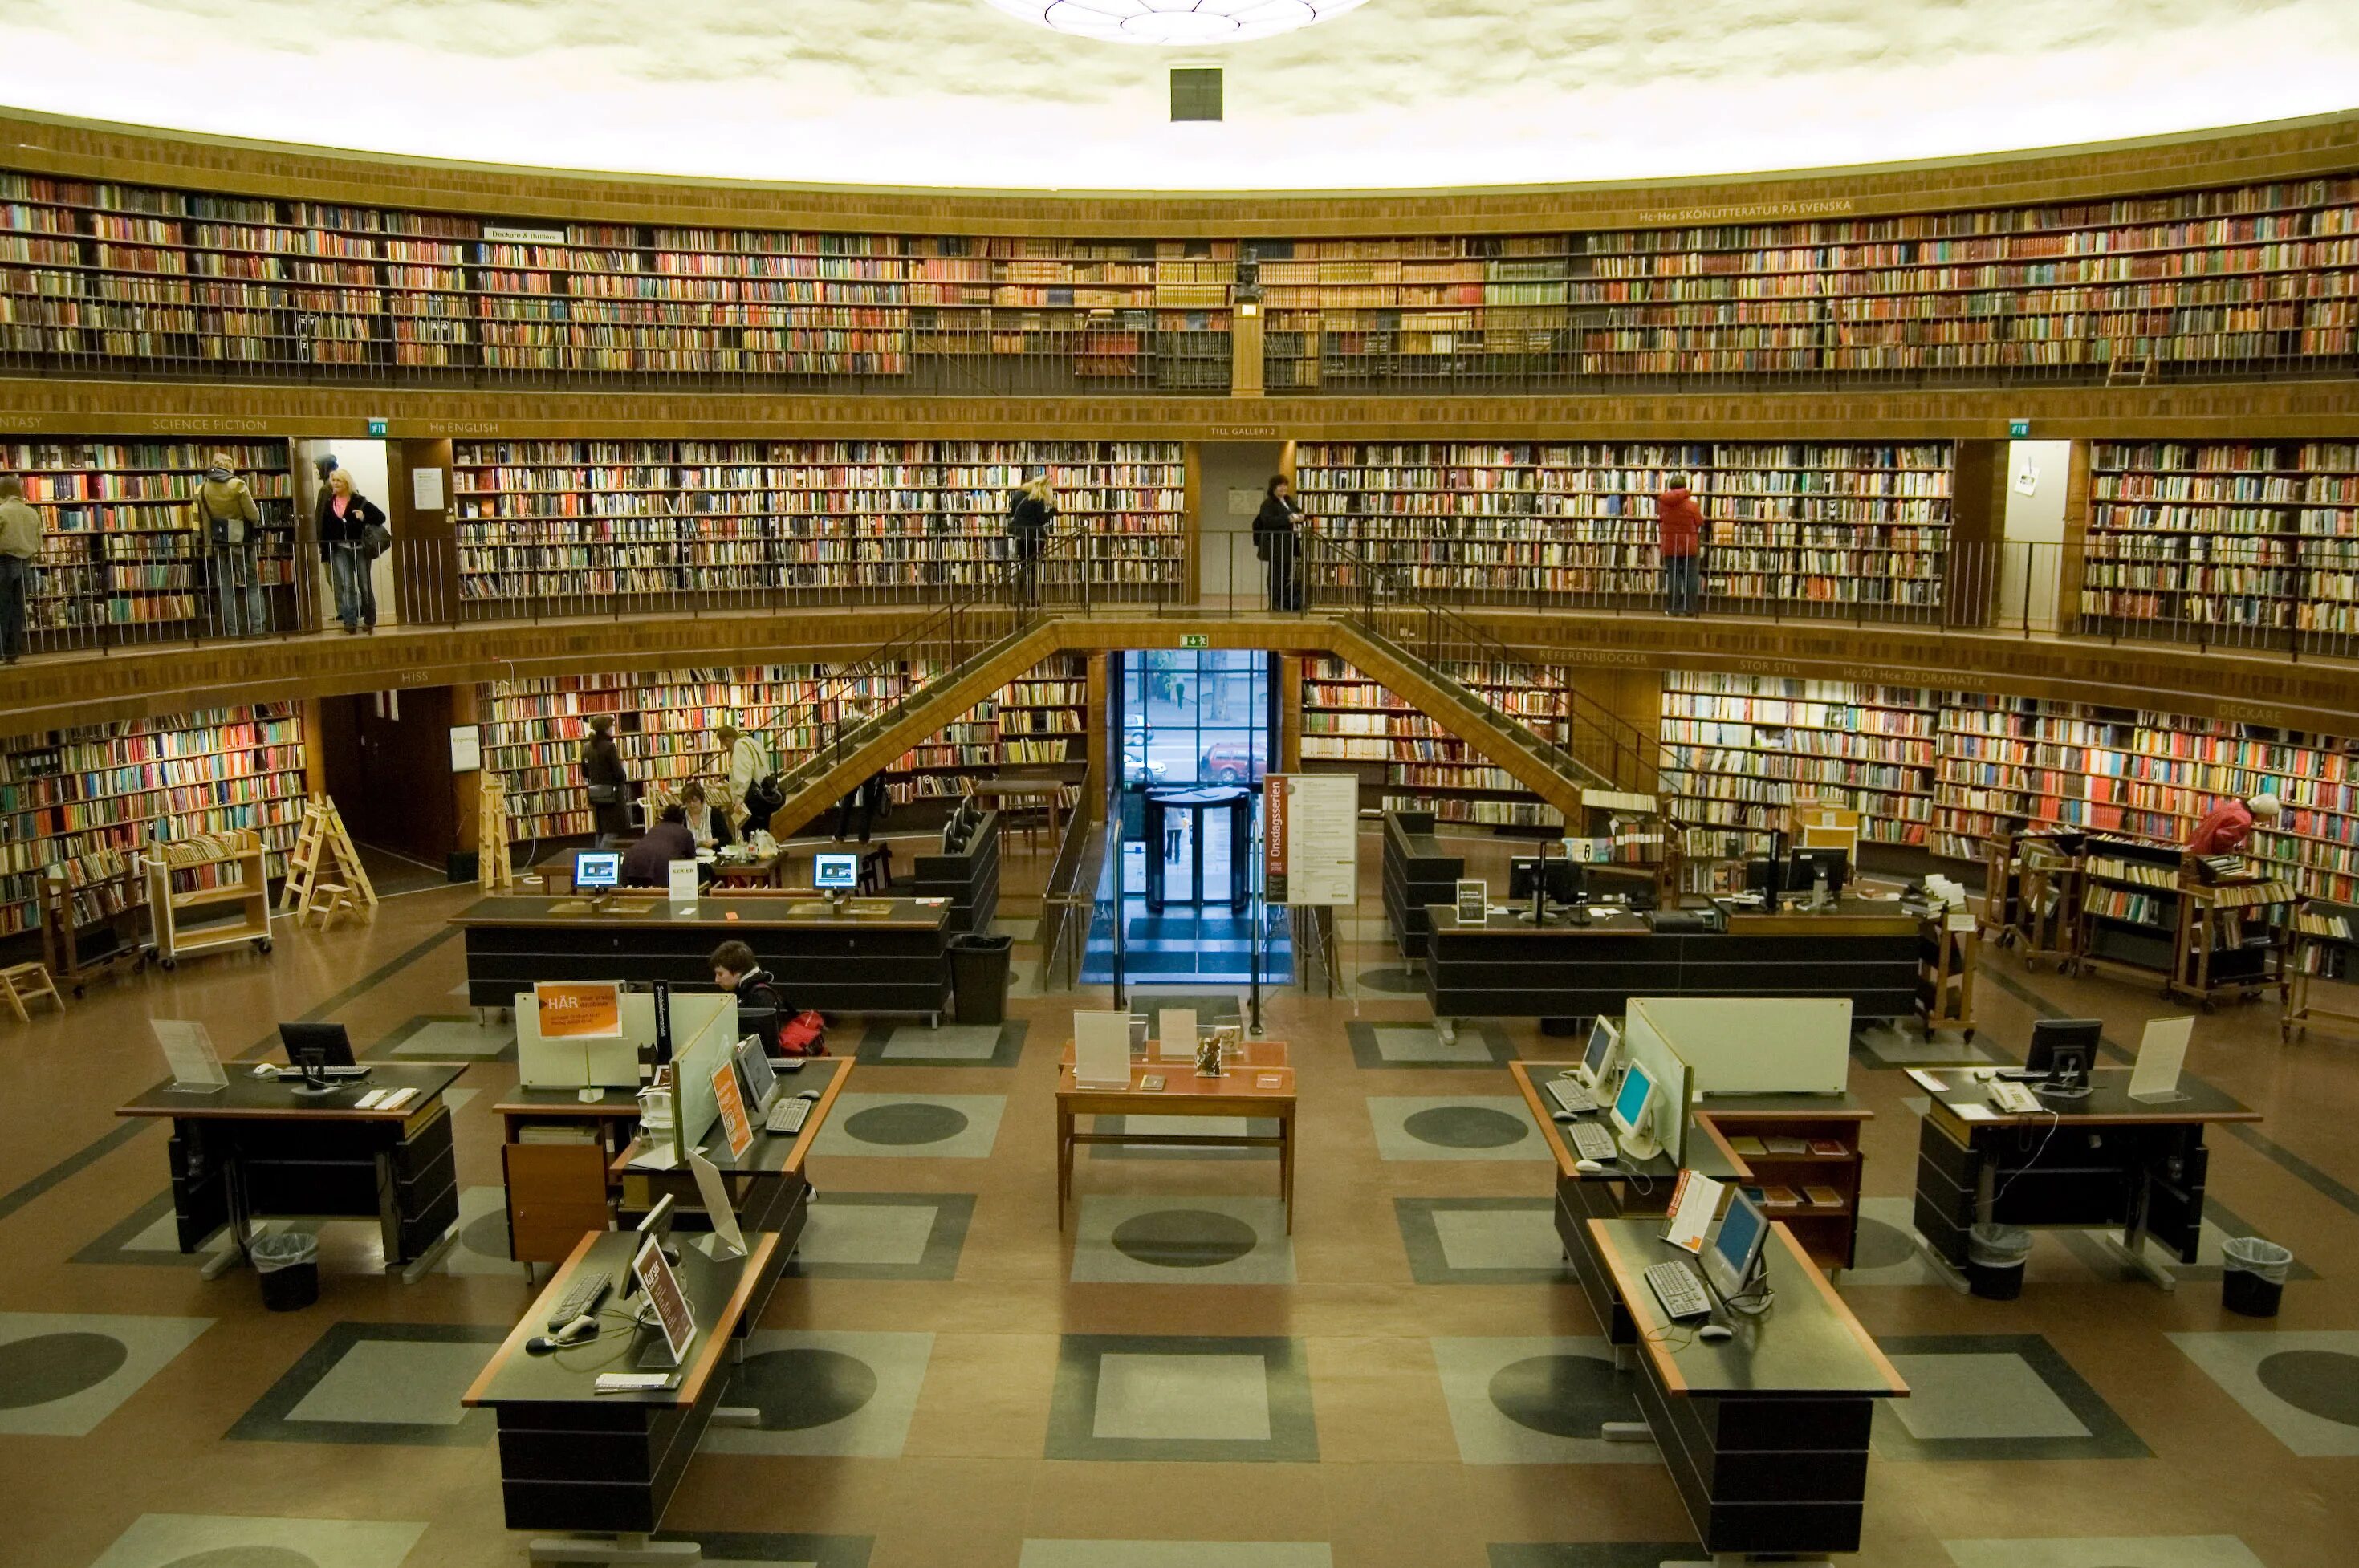 Car library. Стокгольмская городская библиотека, Стокгольм. Лейпцигская немецкая библиотека. Стокгольмская общественная библиотека Швеция. Библиотека в Стокгольме Асплунд.